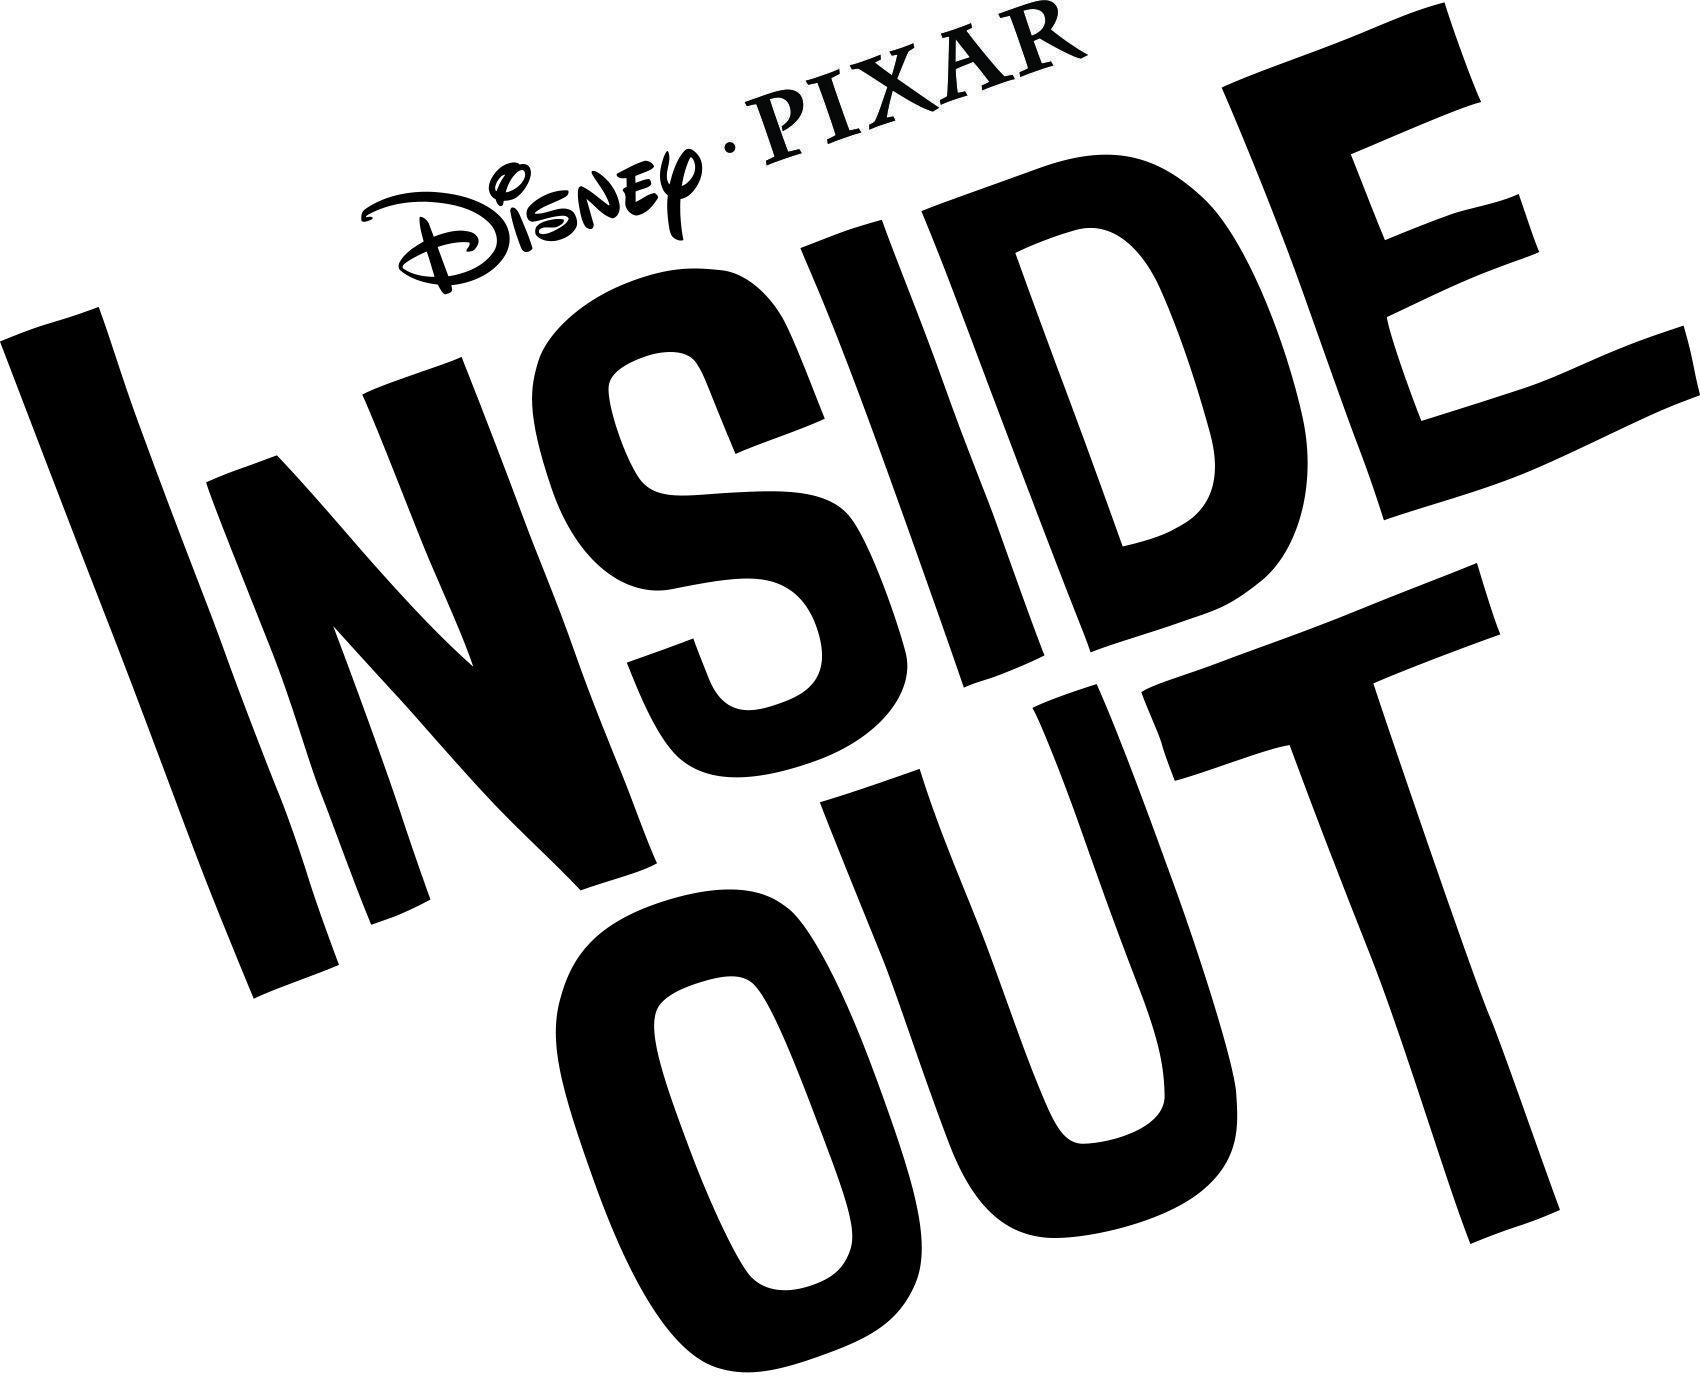 Disney Pixar Lava Logo - Pixar releases Inside Out title treatment and reveals Lava short